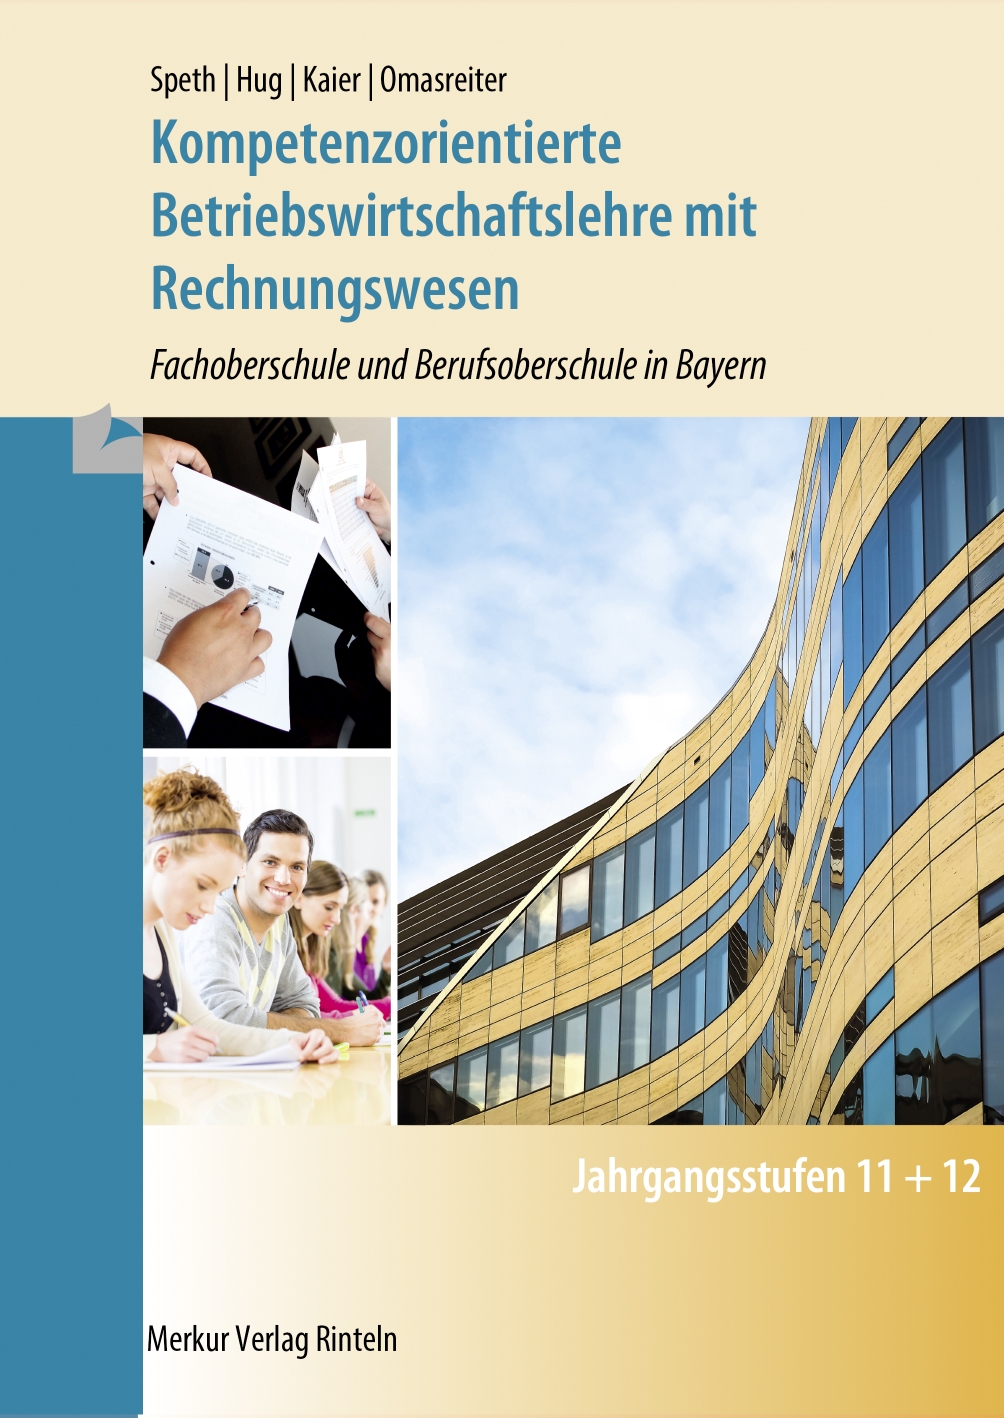 Kompetenzorientierte Betriebswirtschaftslehre mit Rechnungswesen FOS/BOS in Bayern Jgst. 11 + 12